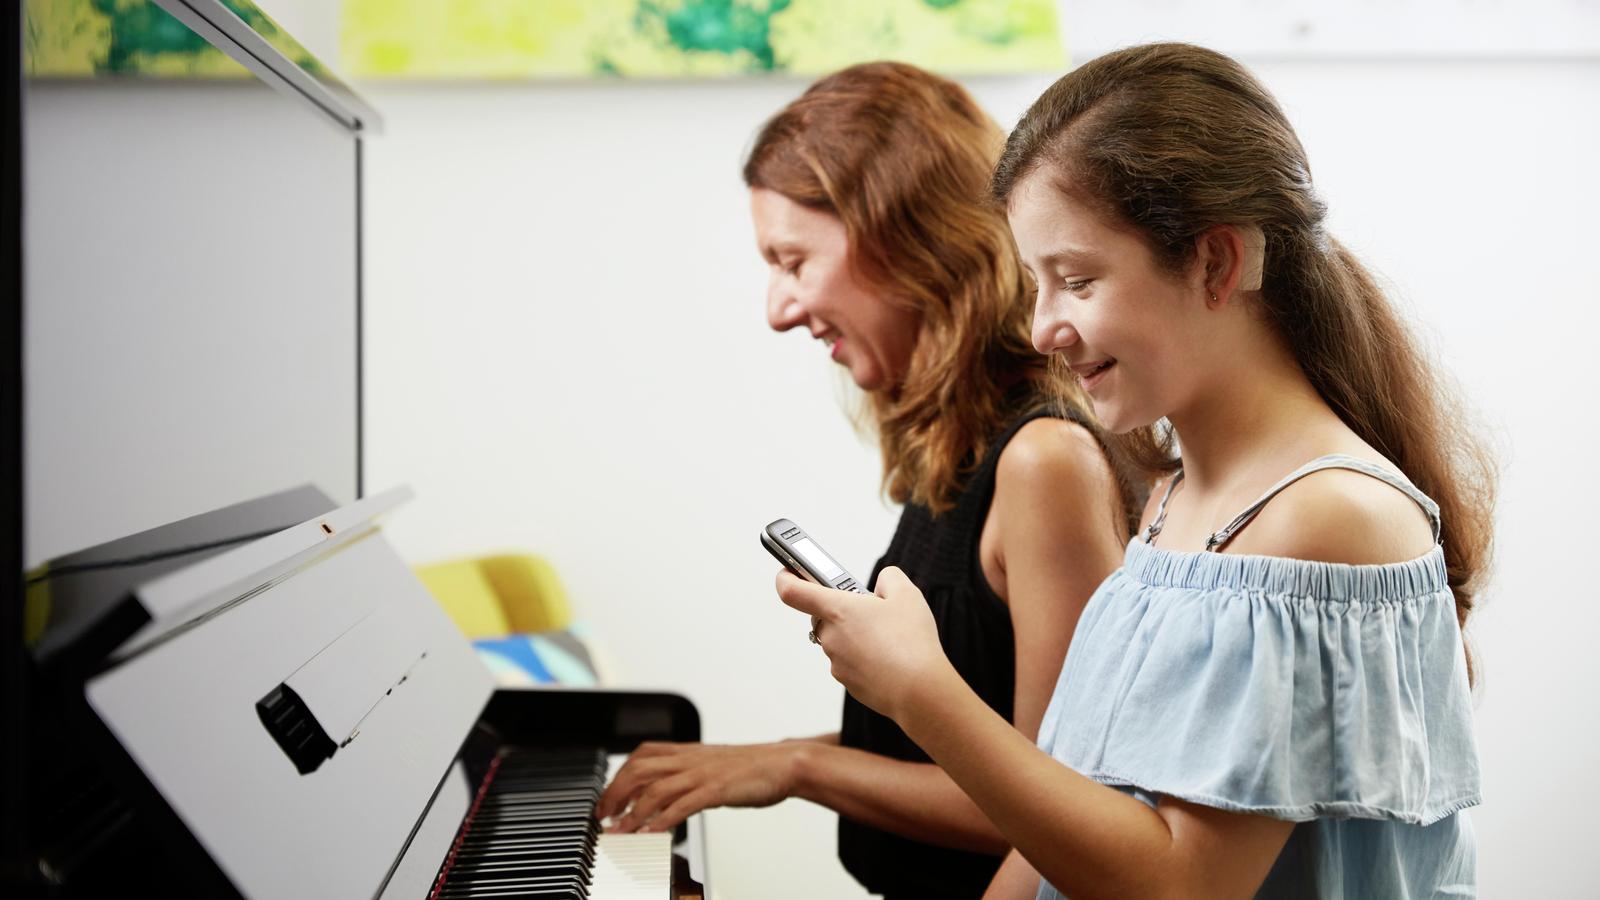 Teini-ikäinen tyttö käyttää mikrofonia samalla, kun hänen äitinsä soittaa pianoa